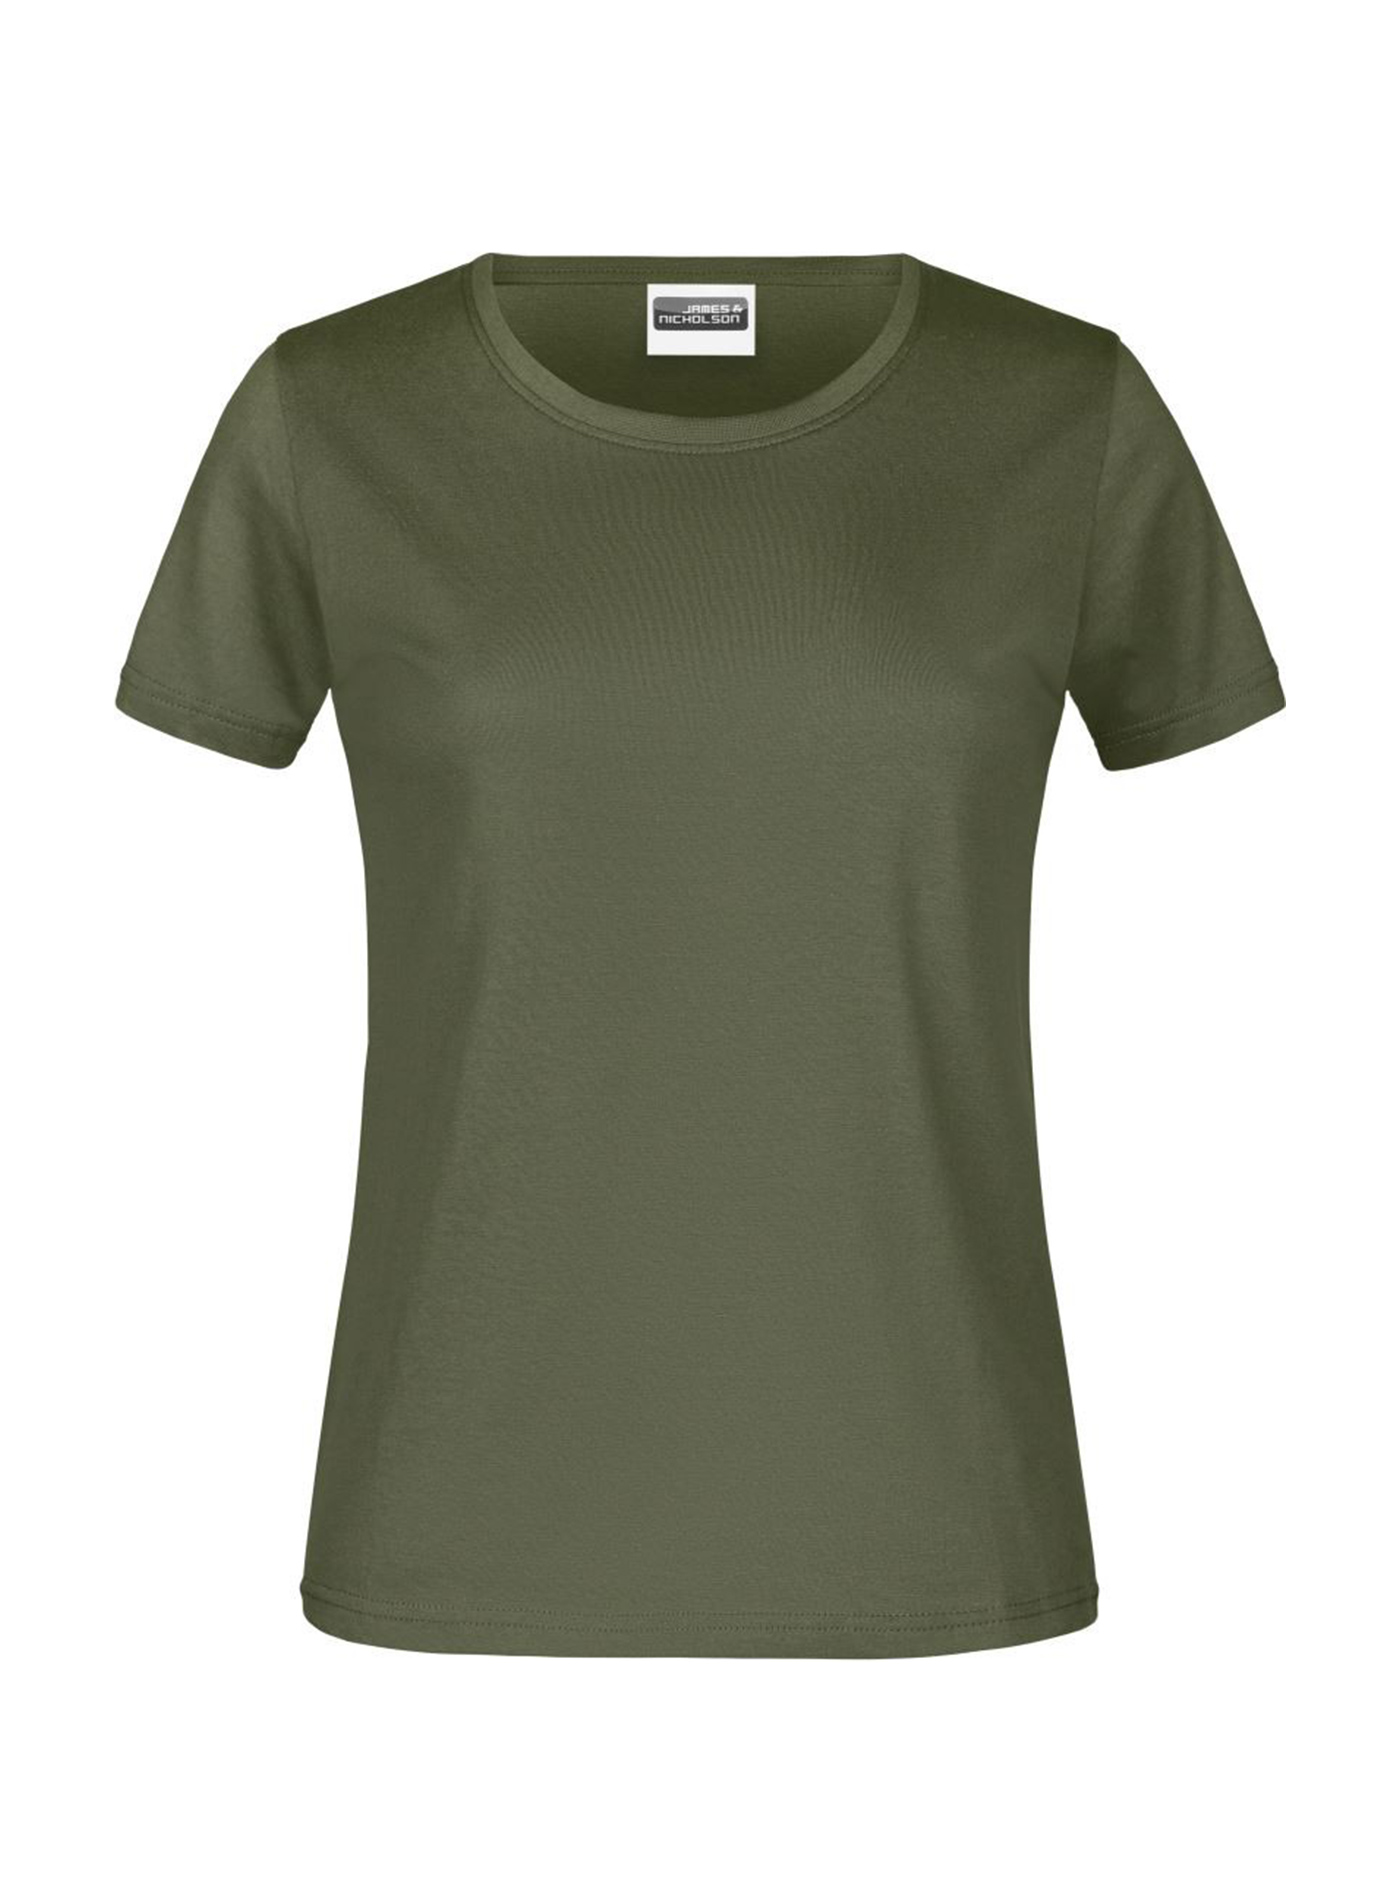 Dámské tričko James & Nicholson basic - Olivově zelená S